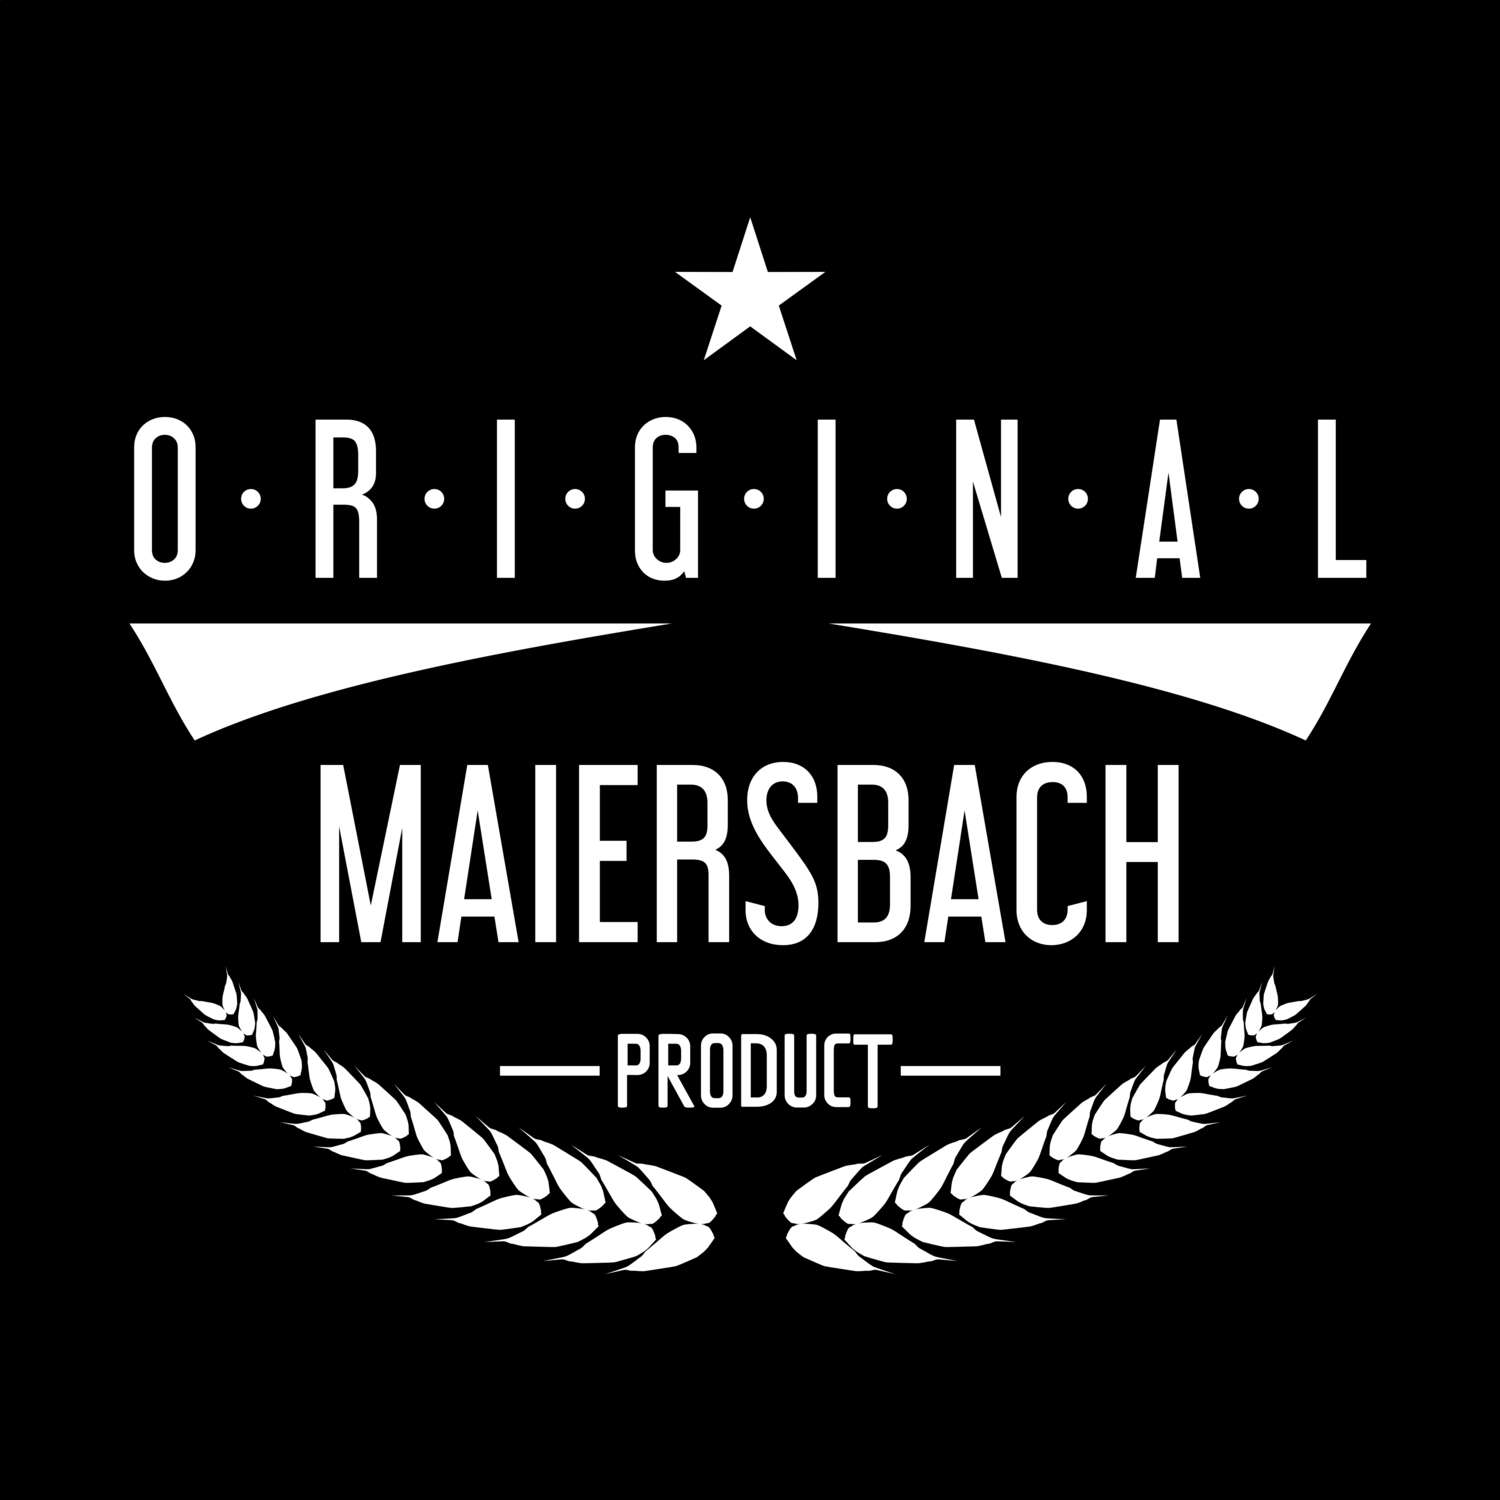 Maiersbach T-Shirt »Original Product«